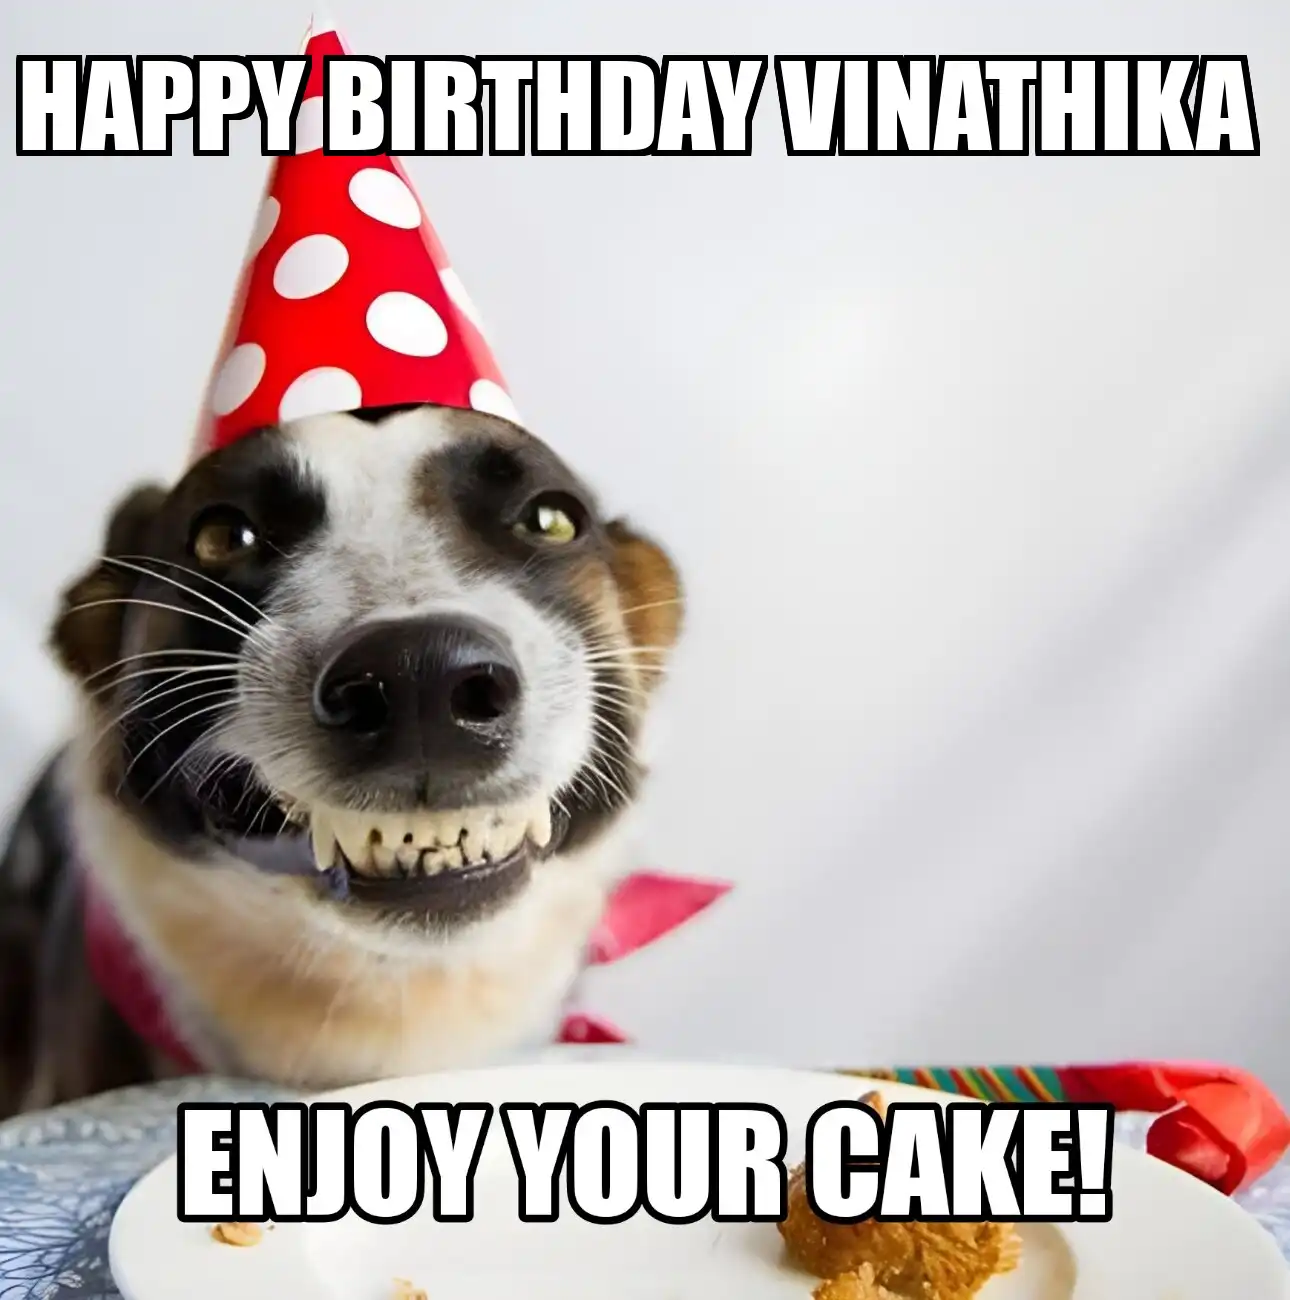 Happy Birthday Vinathika Enjoy Your Cake Dog Meme